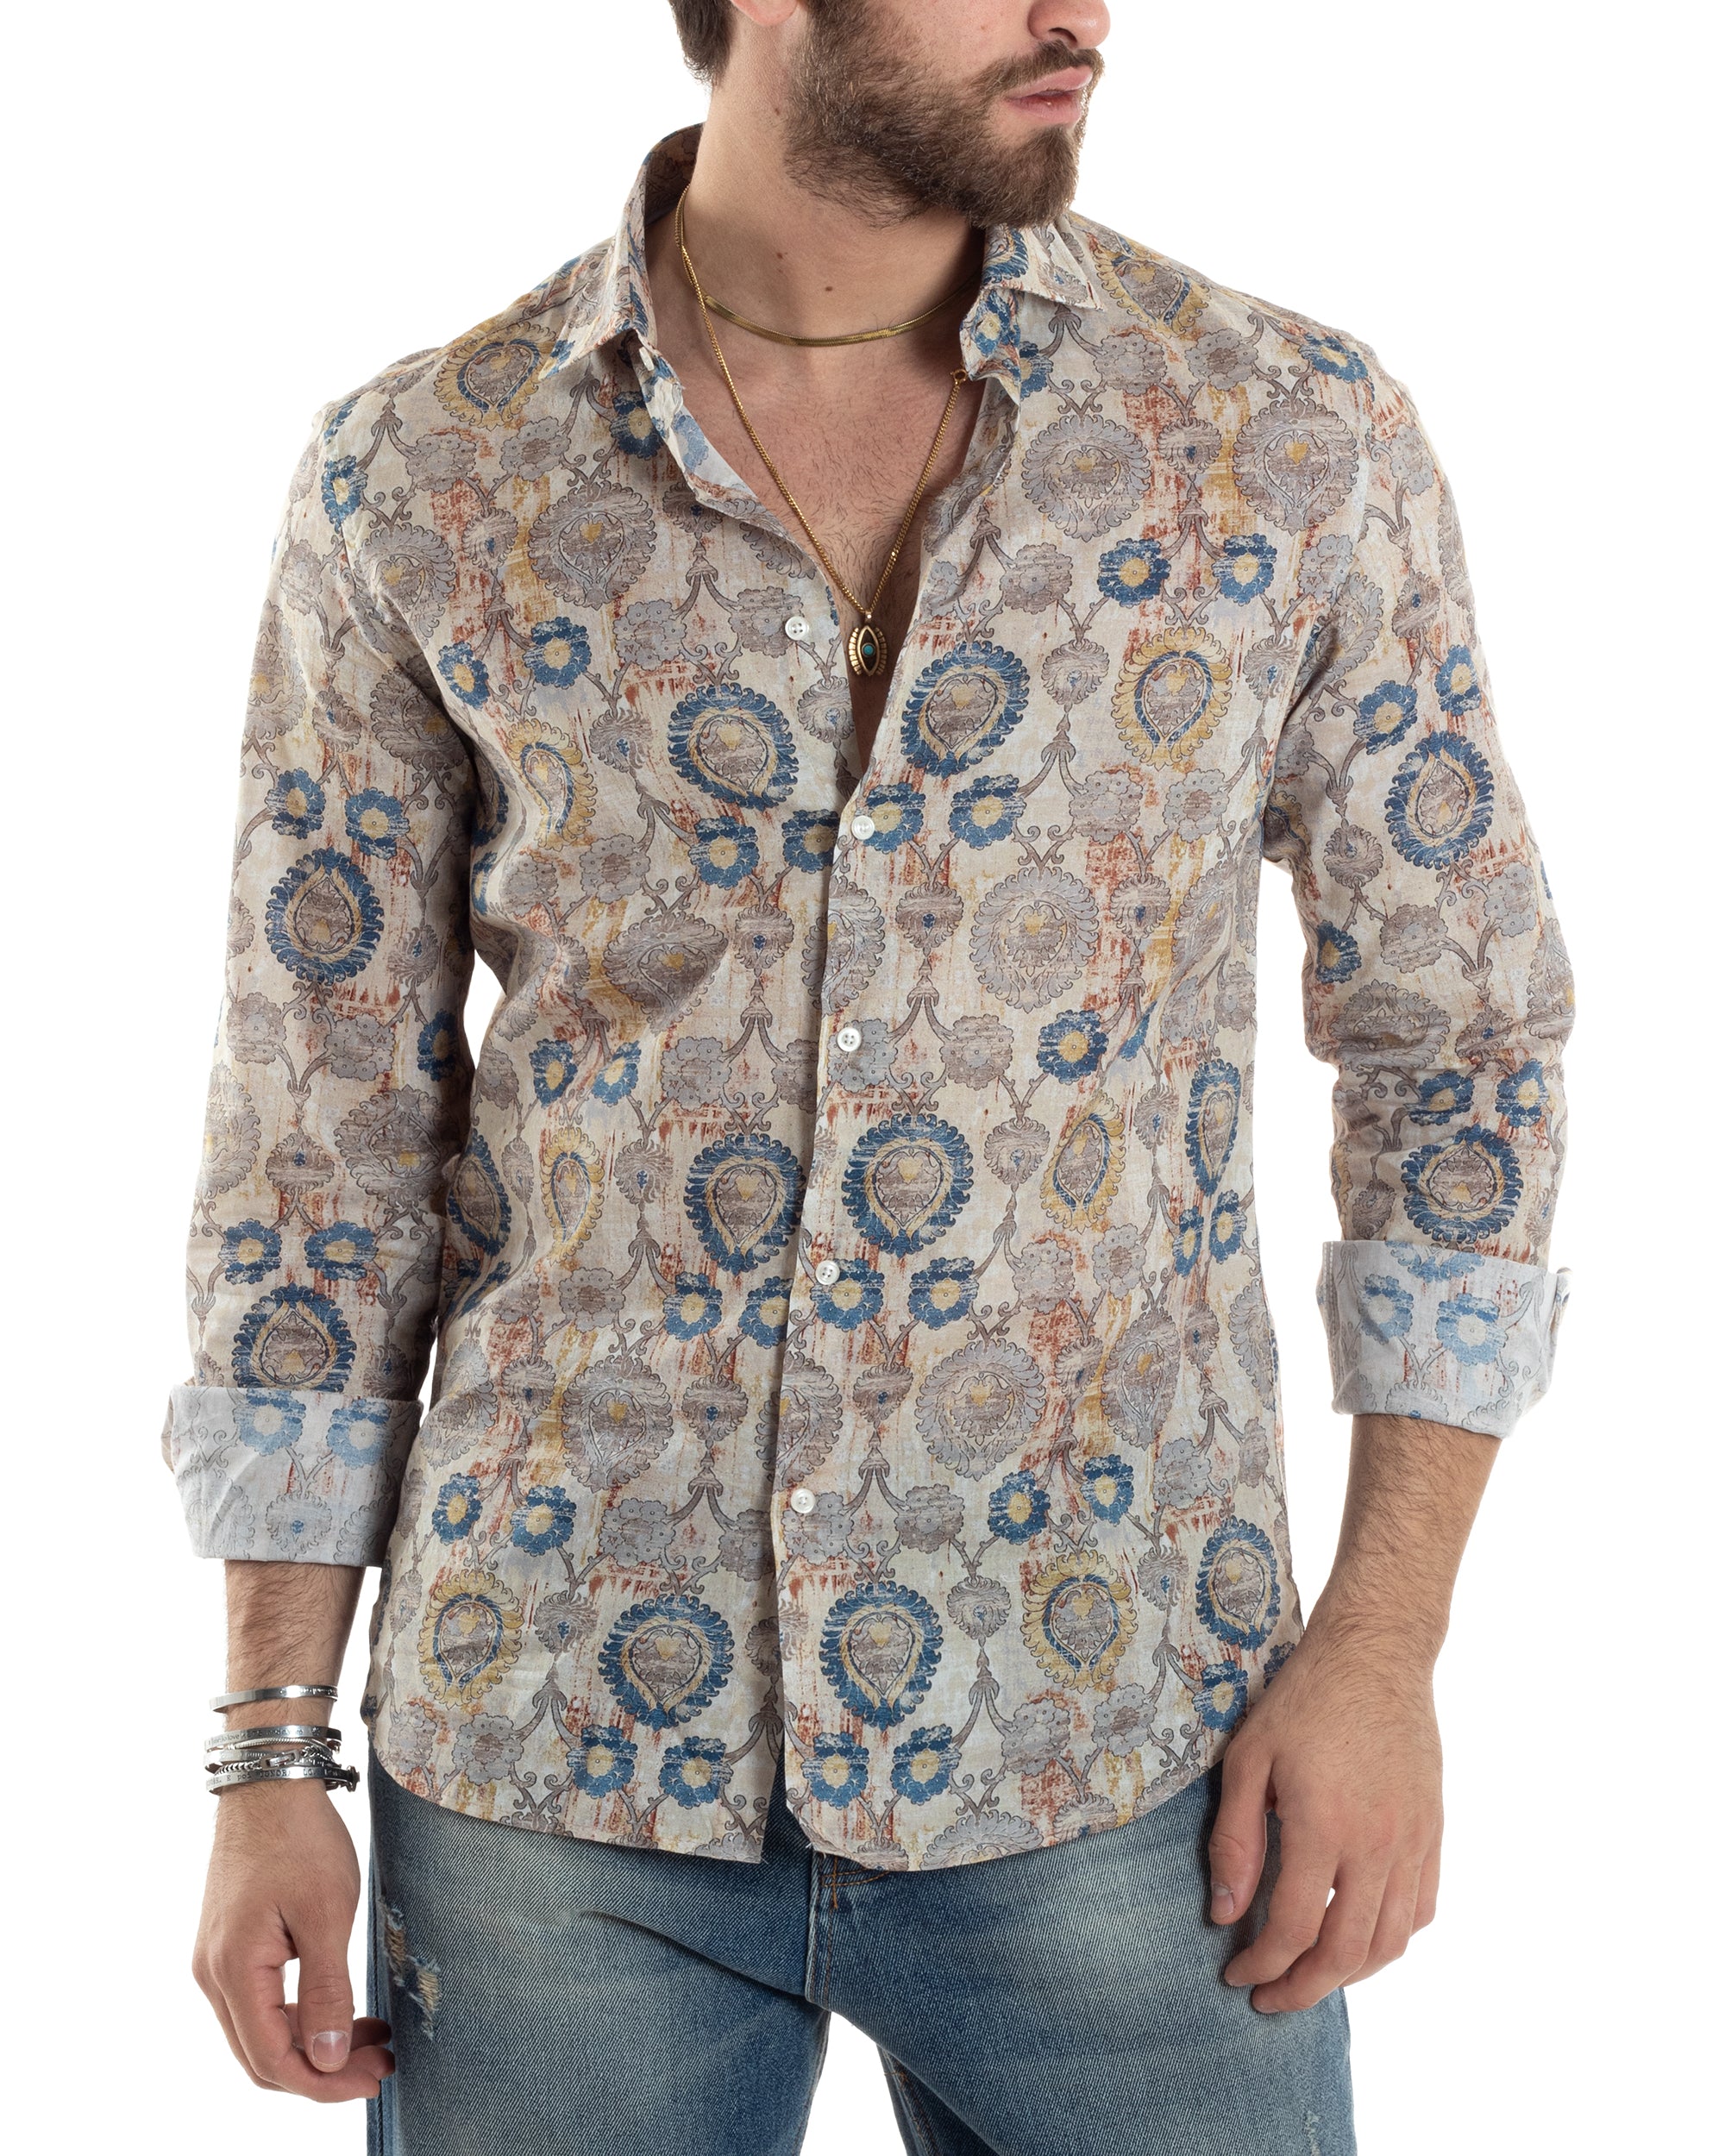 Camicia Uomo Manica Lunga Collo Francese Con Colletto Slim Fit Multicolore Fantasia Etnica GIOSAL-C2853A